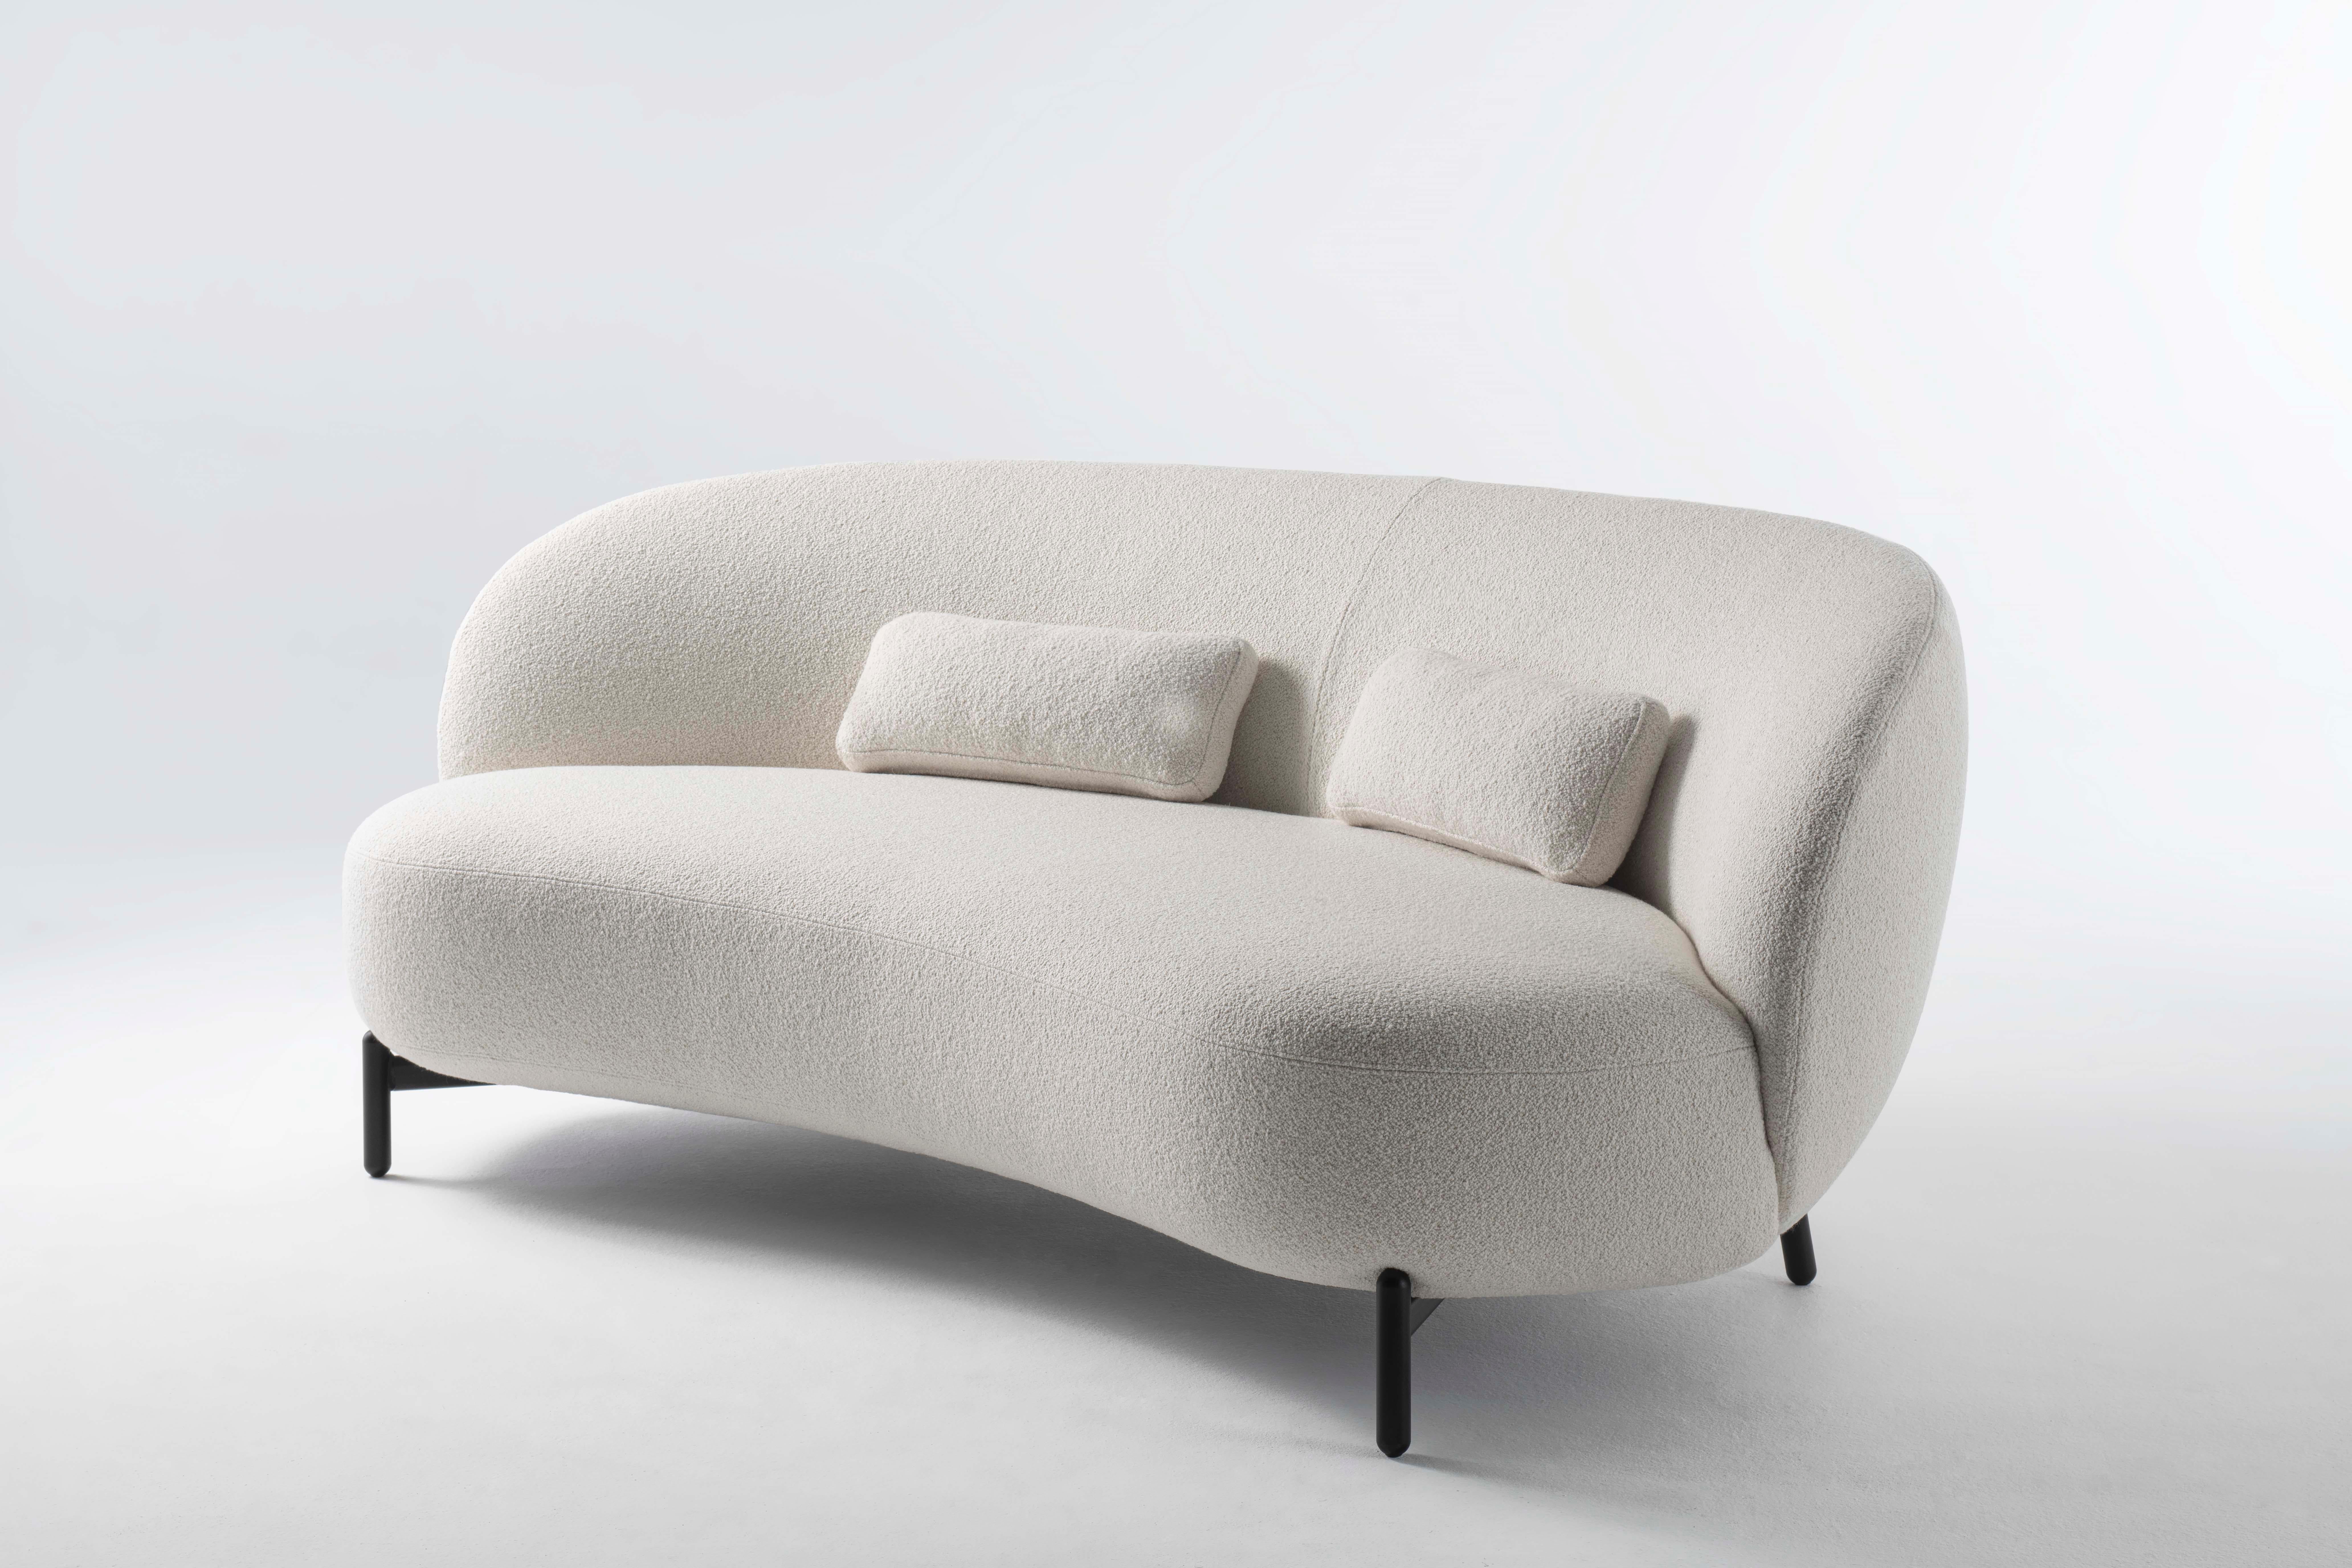 Lunam ist eine bezaubernde Wohnmöbelkollektion, die von der verträumten Atmosphäre einer Mondlandschaft inspiriert ist. Eine essentielle Struktur aus lackiertem Metall trägt großzügig bemessene gepolsterte Teile. 
Sofa, Sessel und Pouffe sind mit